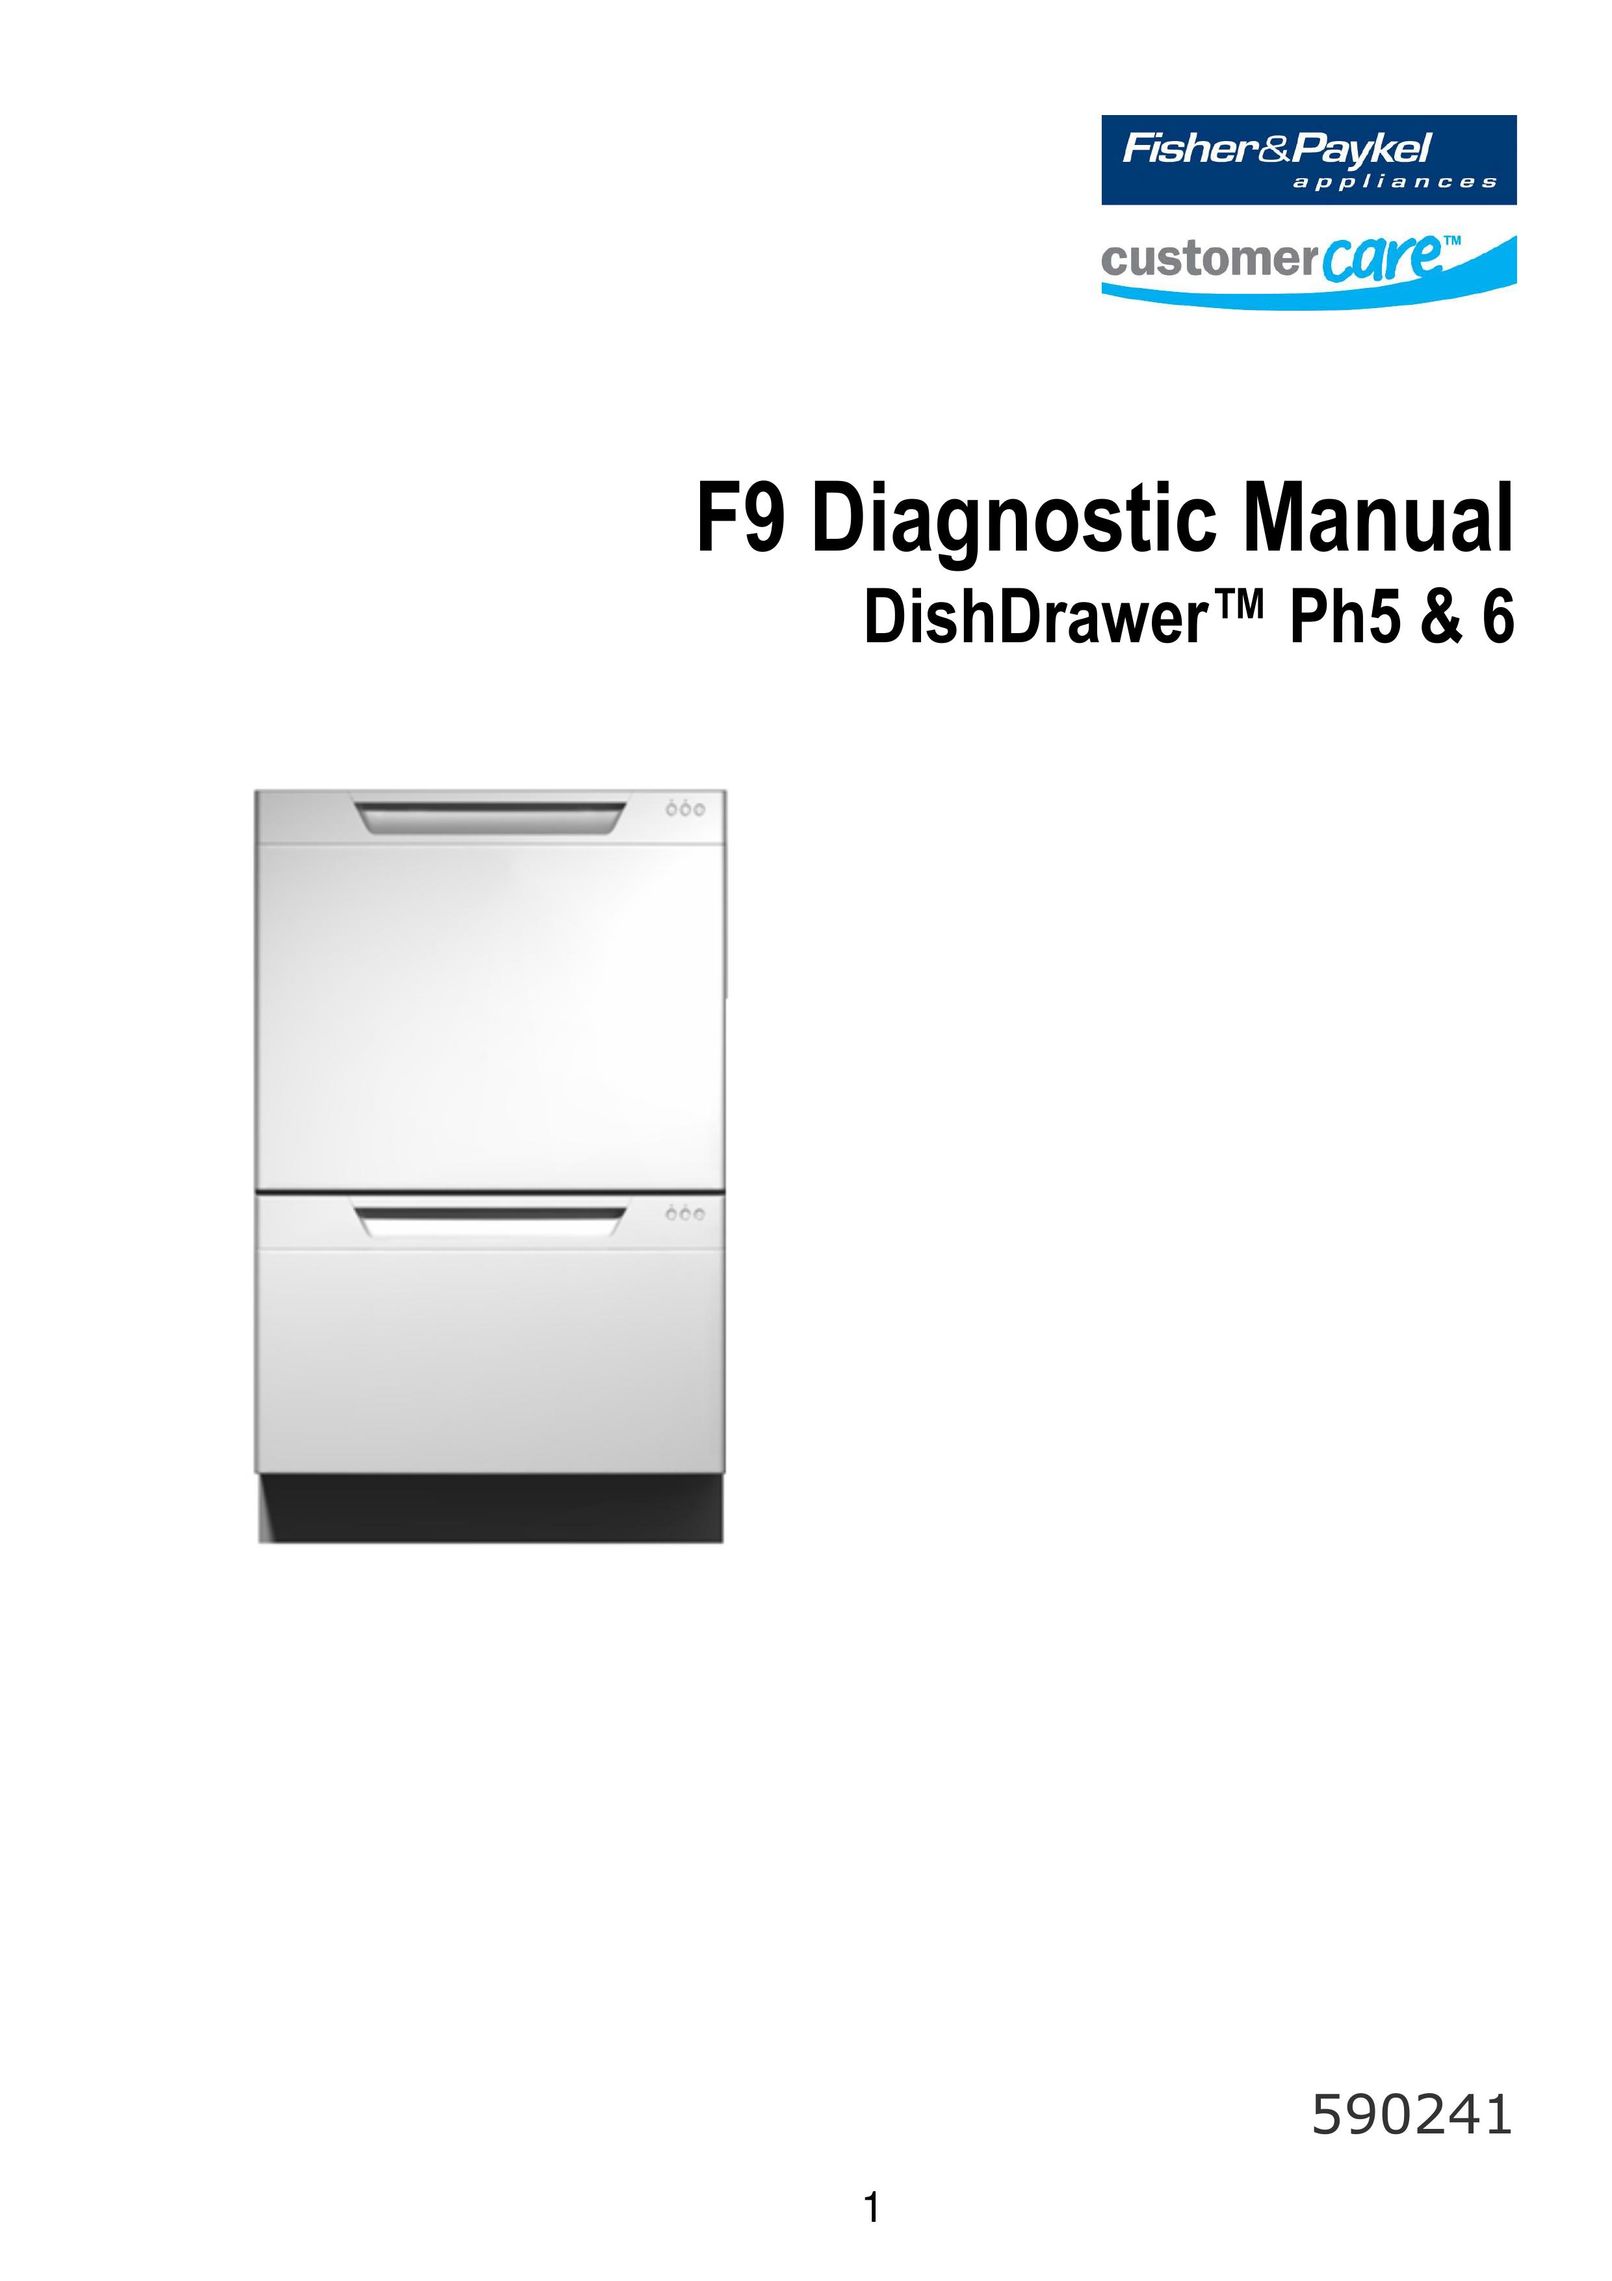 Fisher & Paykel 590241 Dishwasher User Manual